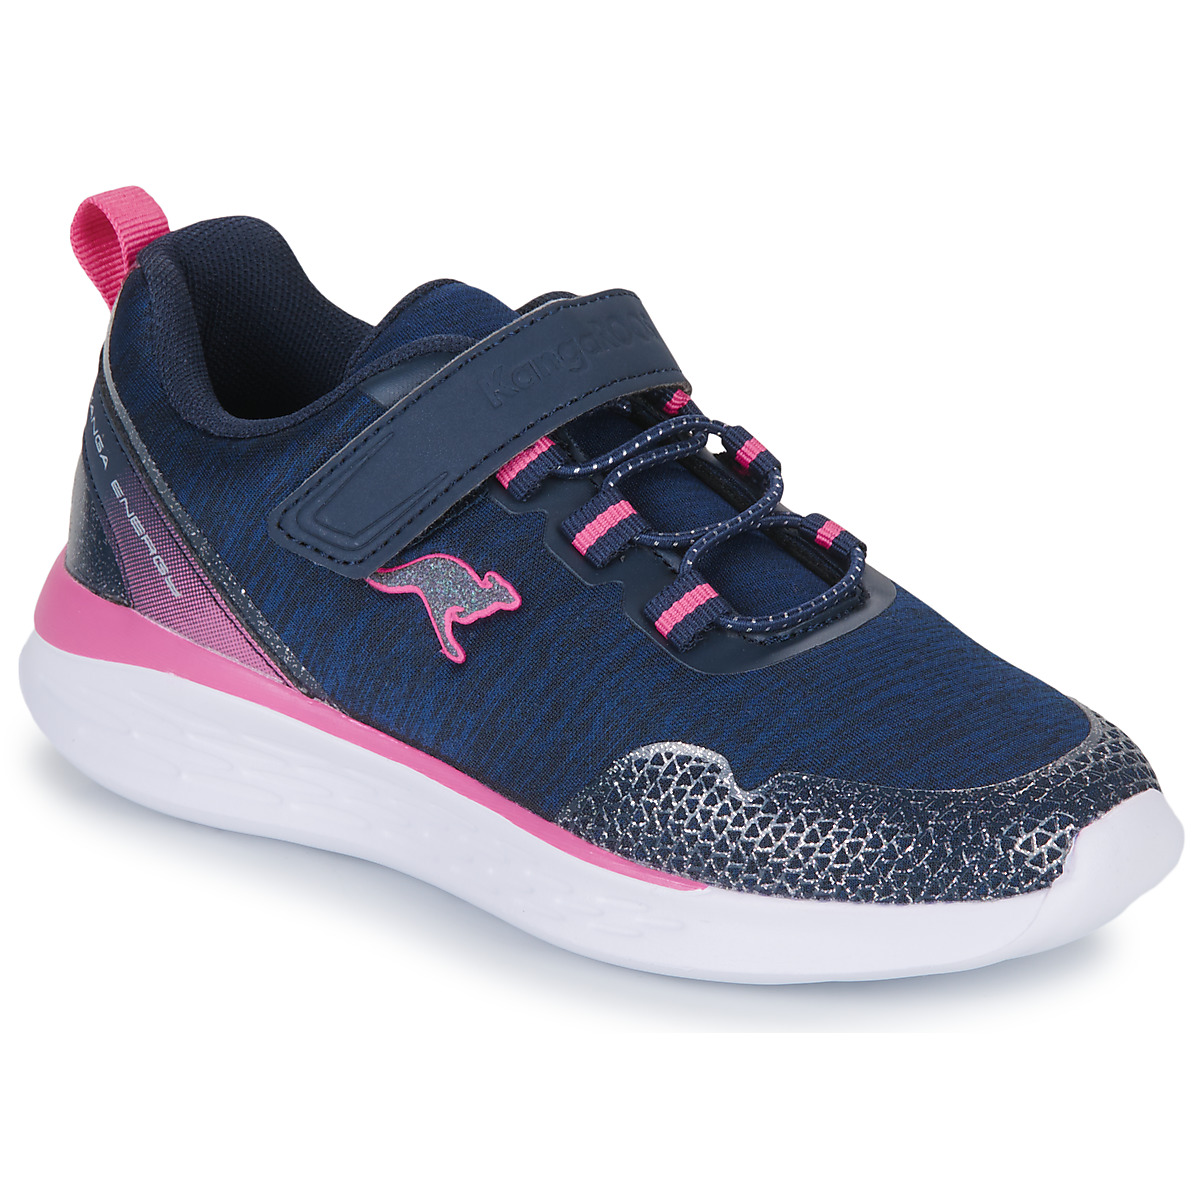 Cipők Lány Rövid szárú edzőcipők Kangaroos KQ-FLEET II EV Tengerész / Rózsaszín